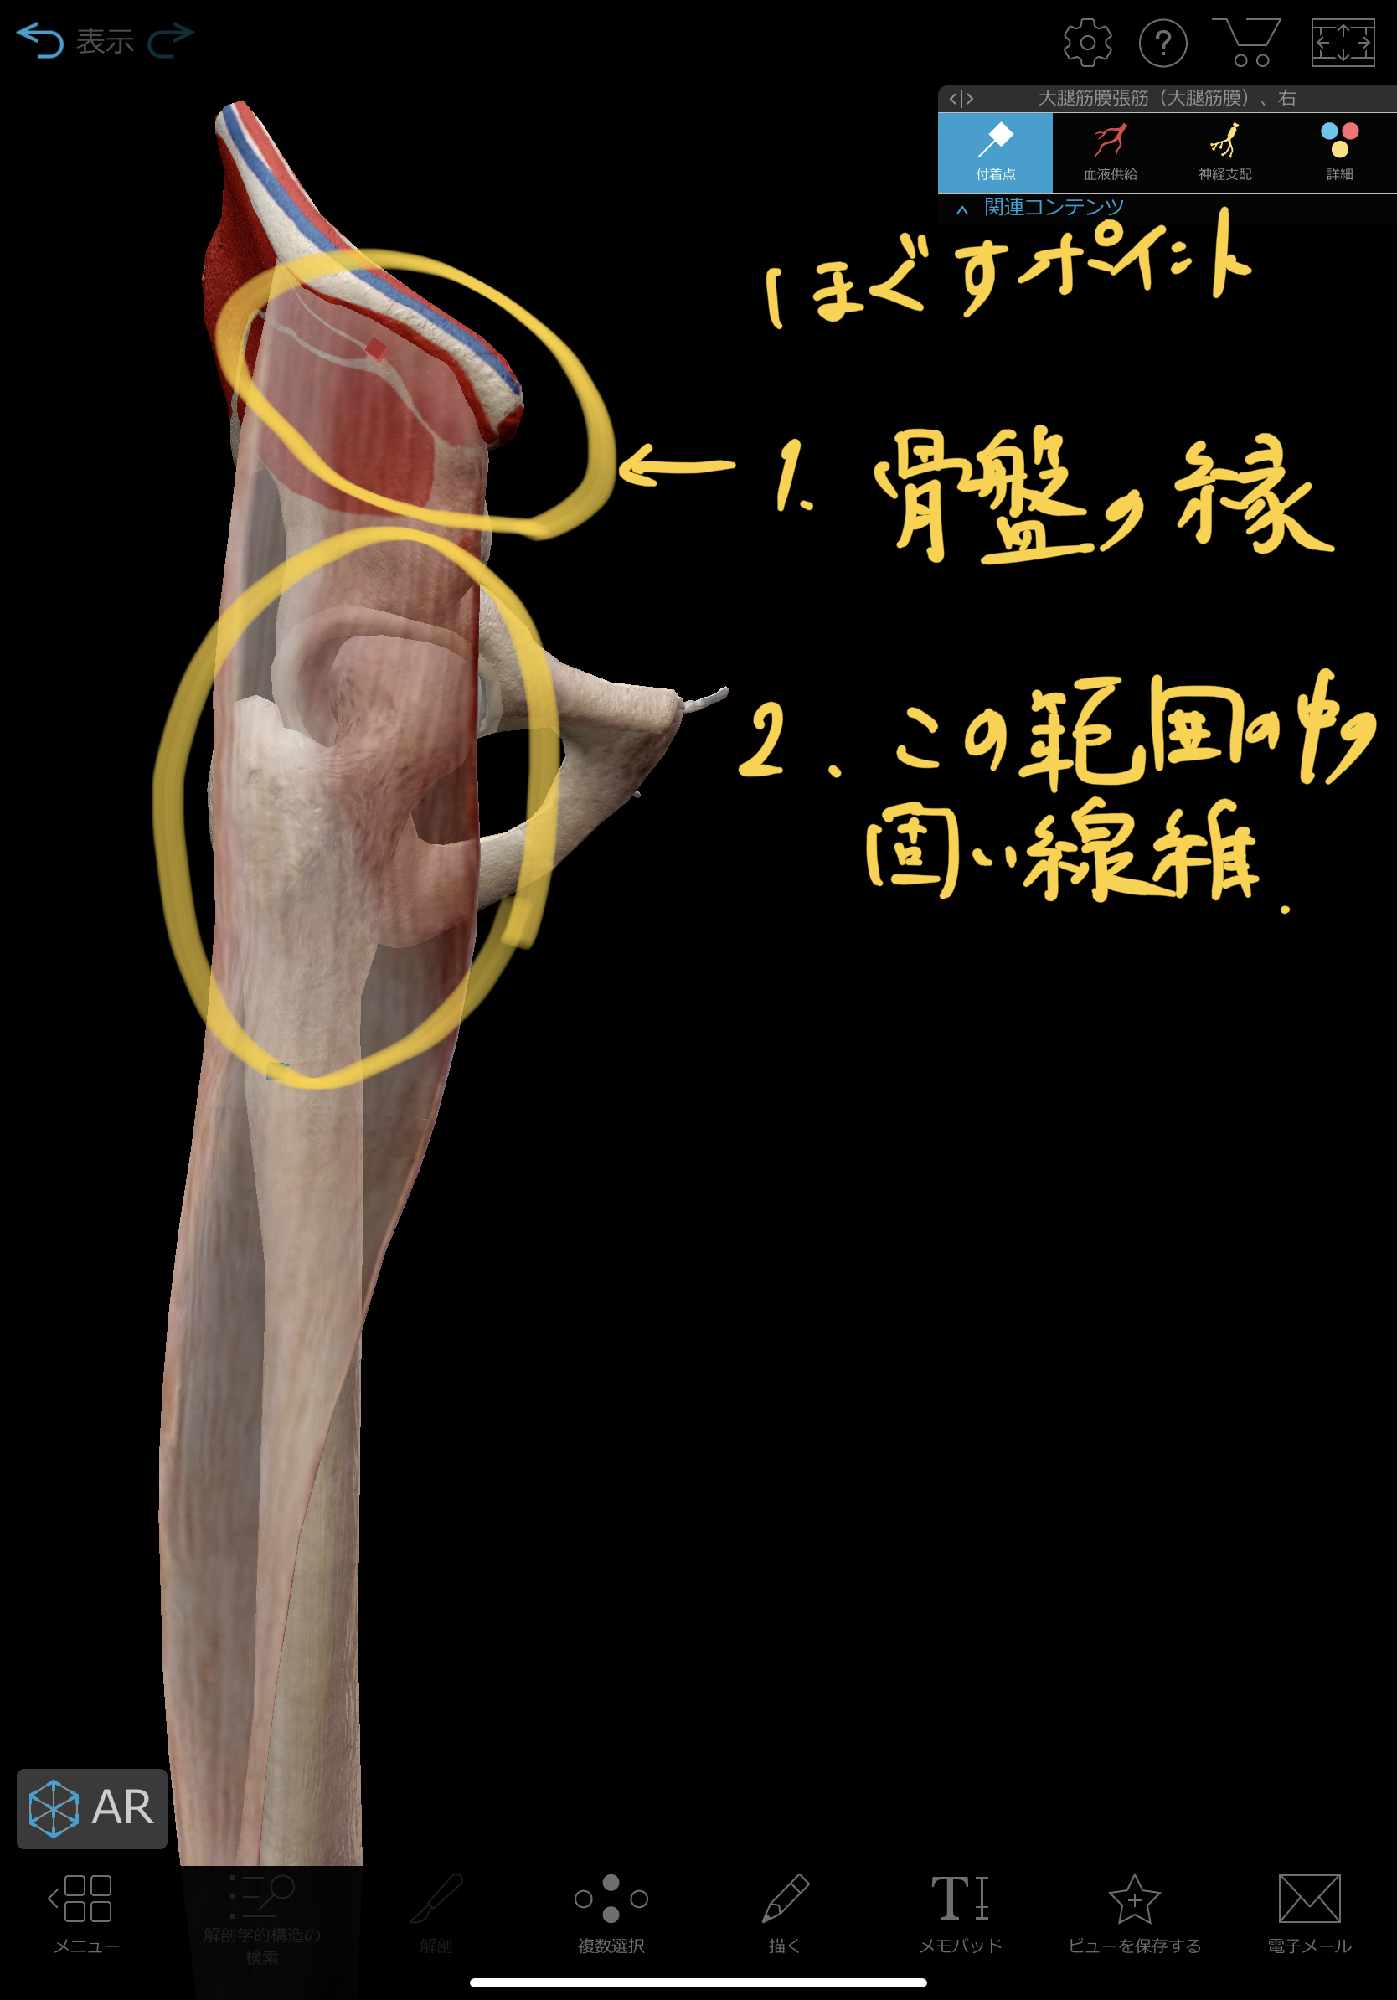 股関節のつまりを改善する 大腿筋膜張筋リリース 理学療法士 安部元隆 マイベストプロ大分